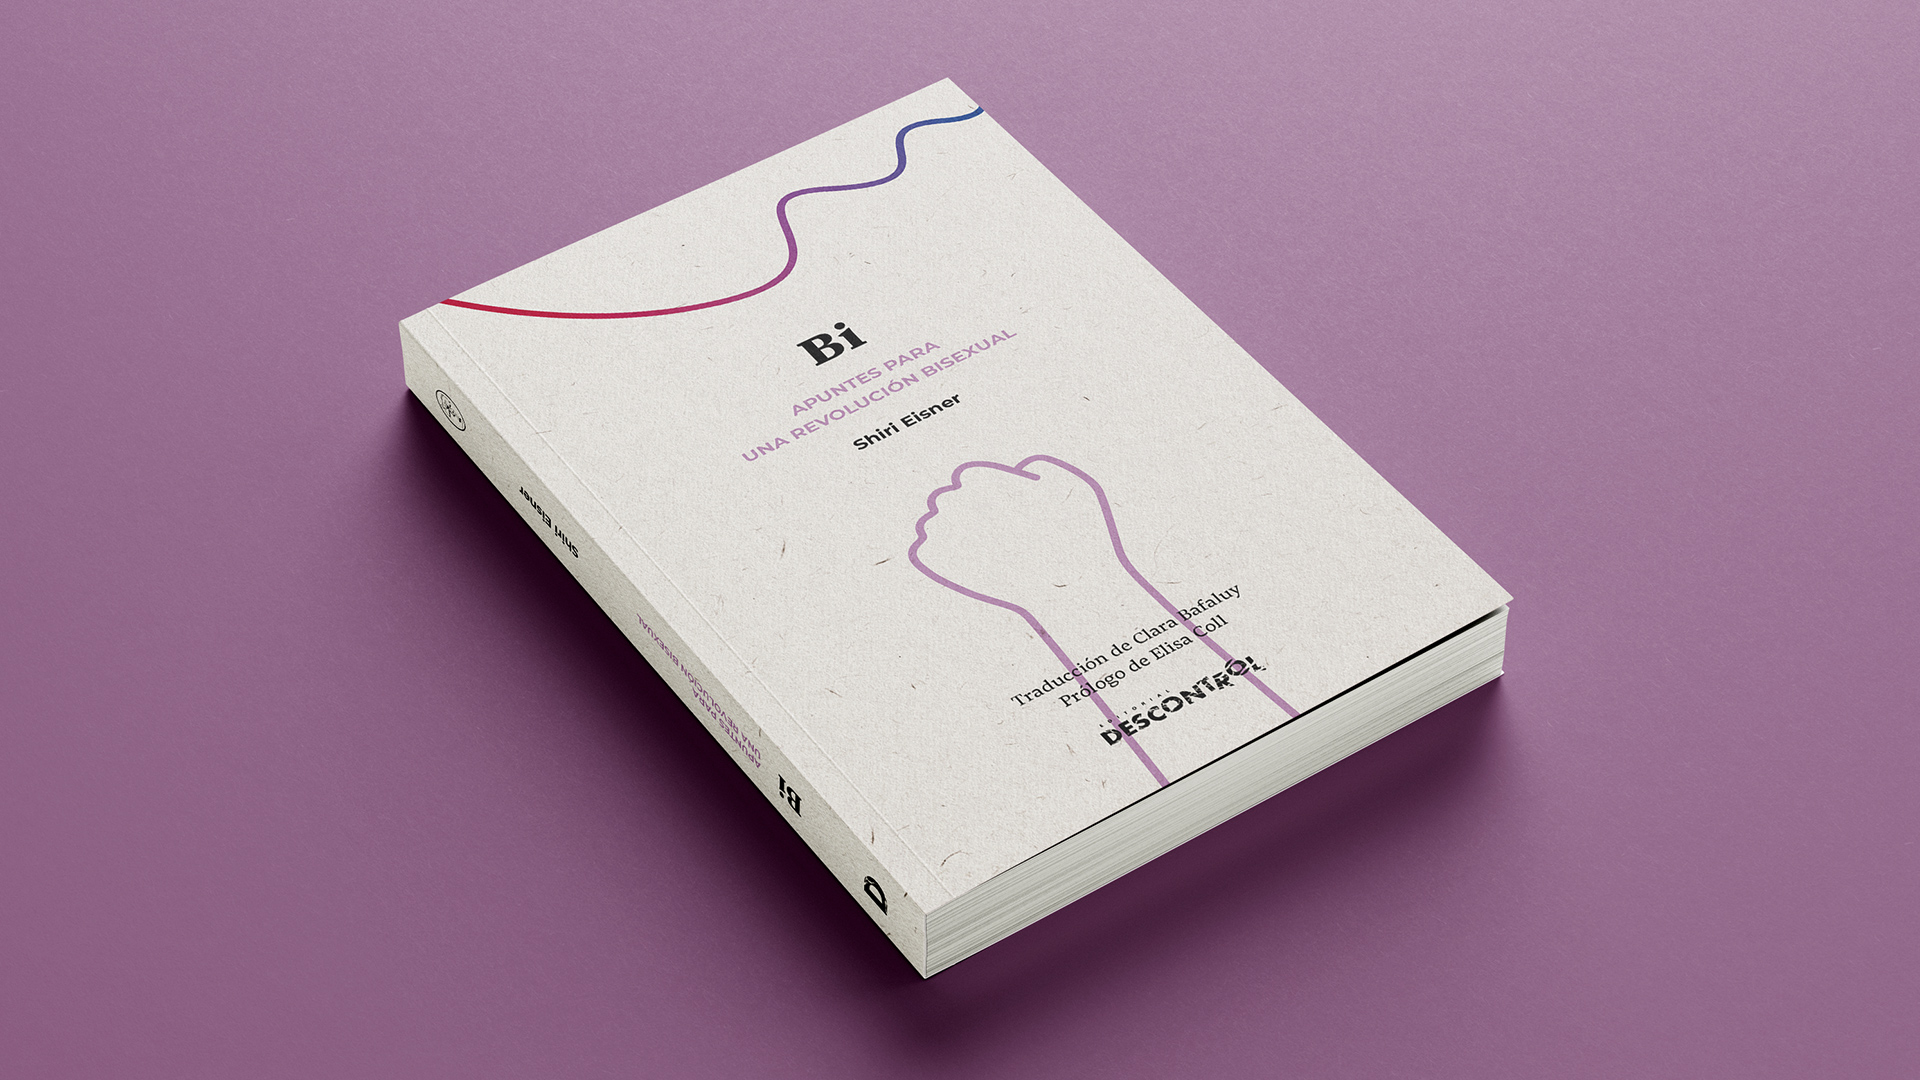 A la imatge es mostra el llibre "Bi: Apuntes para una revolución bisexual" de Shiri Eisner